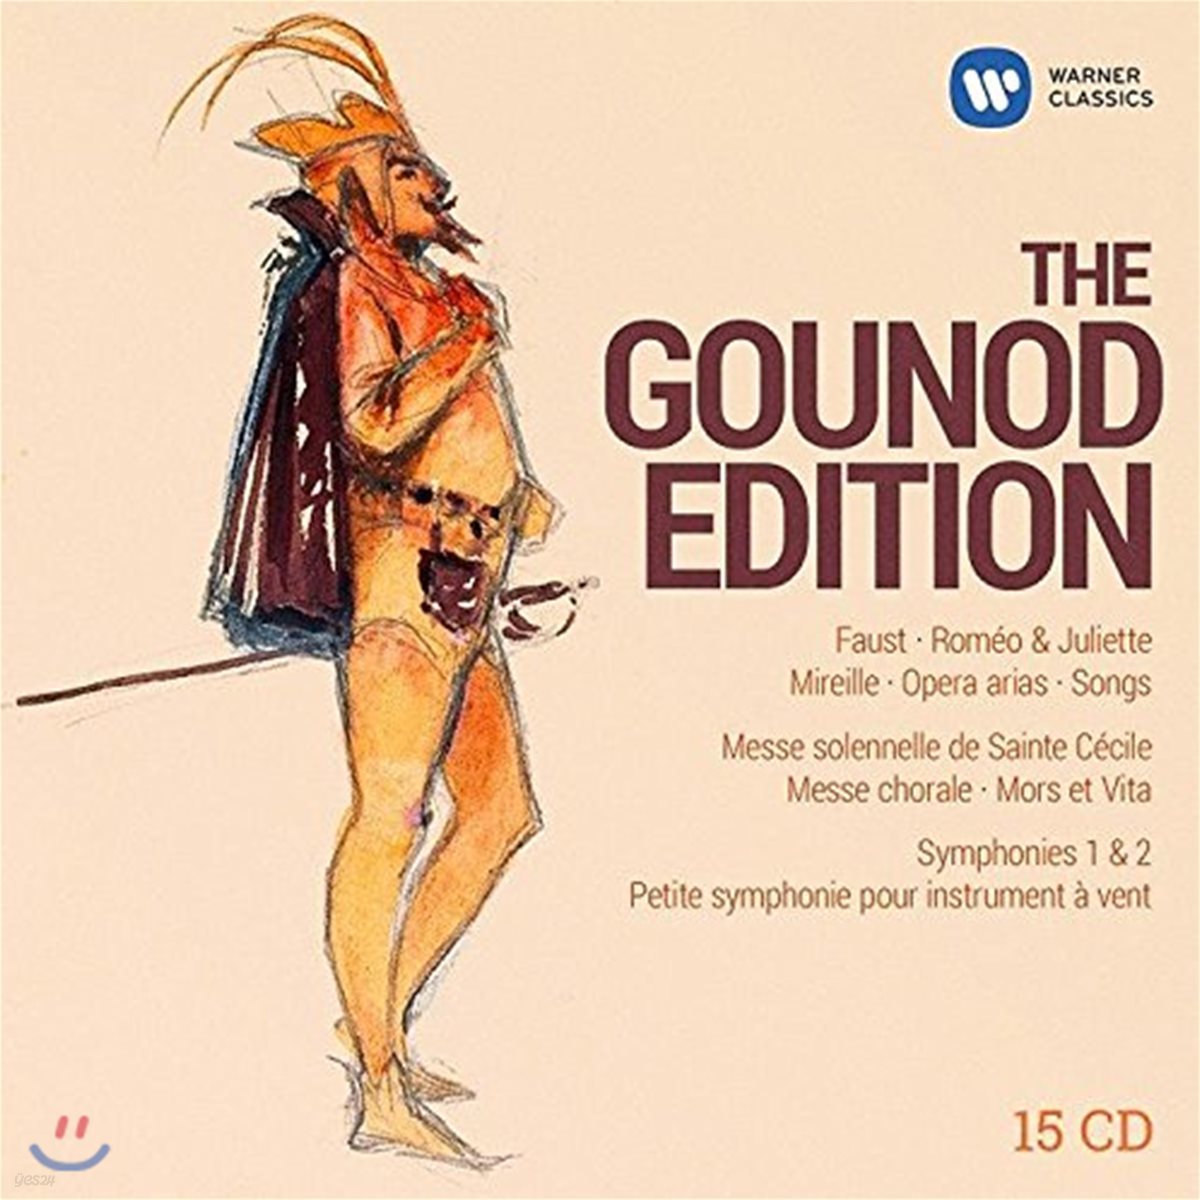 구노 탄생 200주년 기념 에디션 (The Gounod Edition)